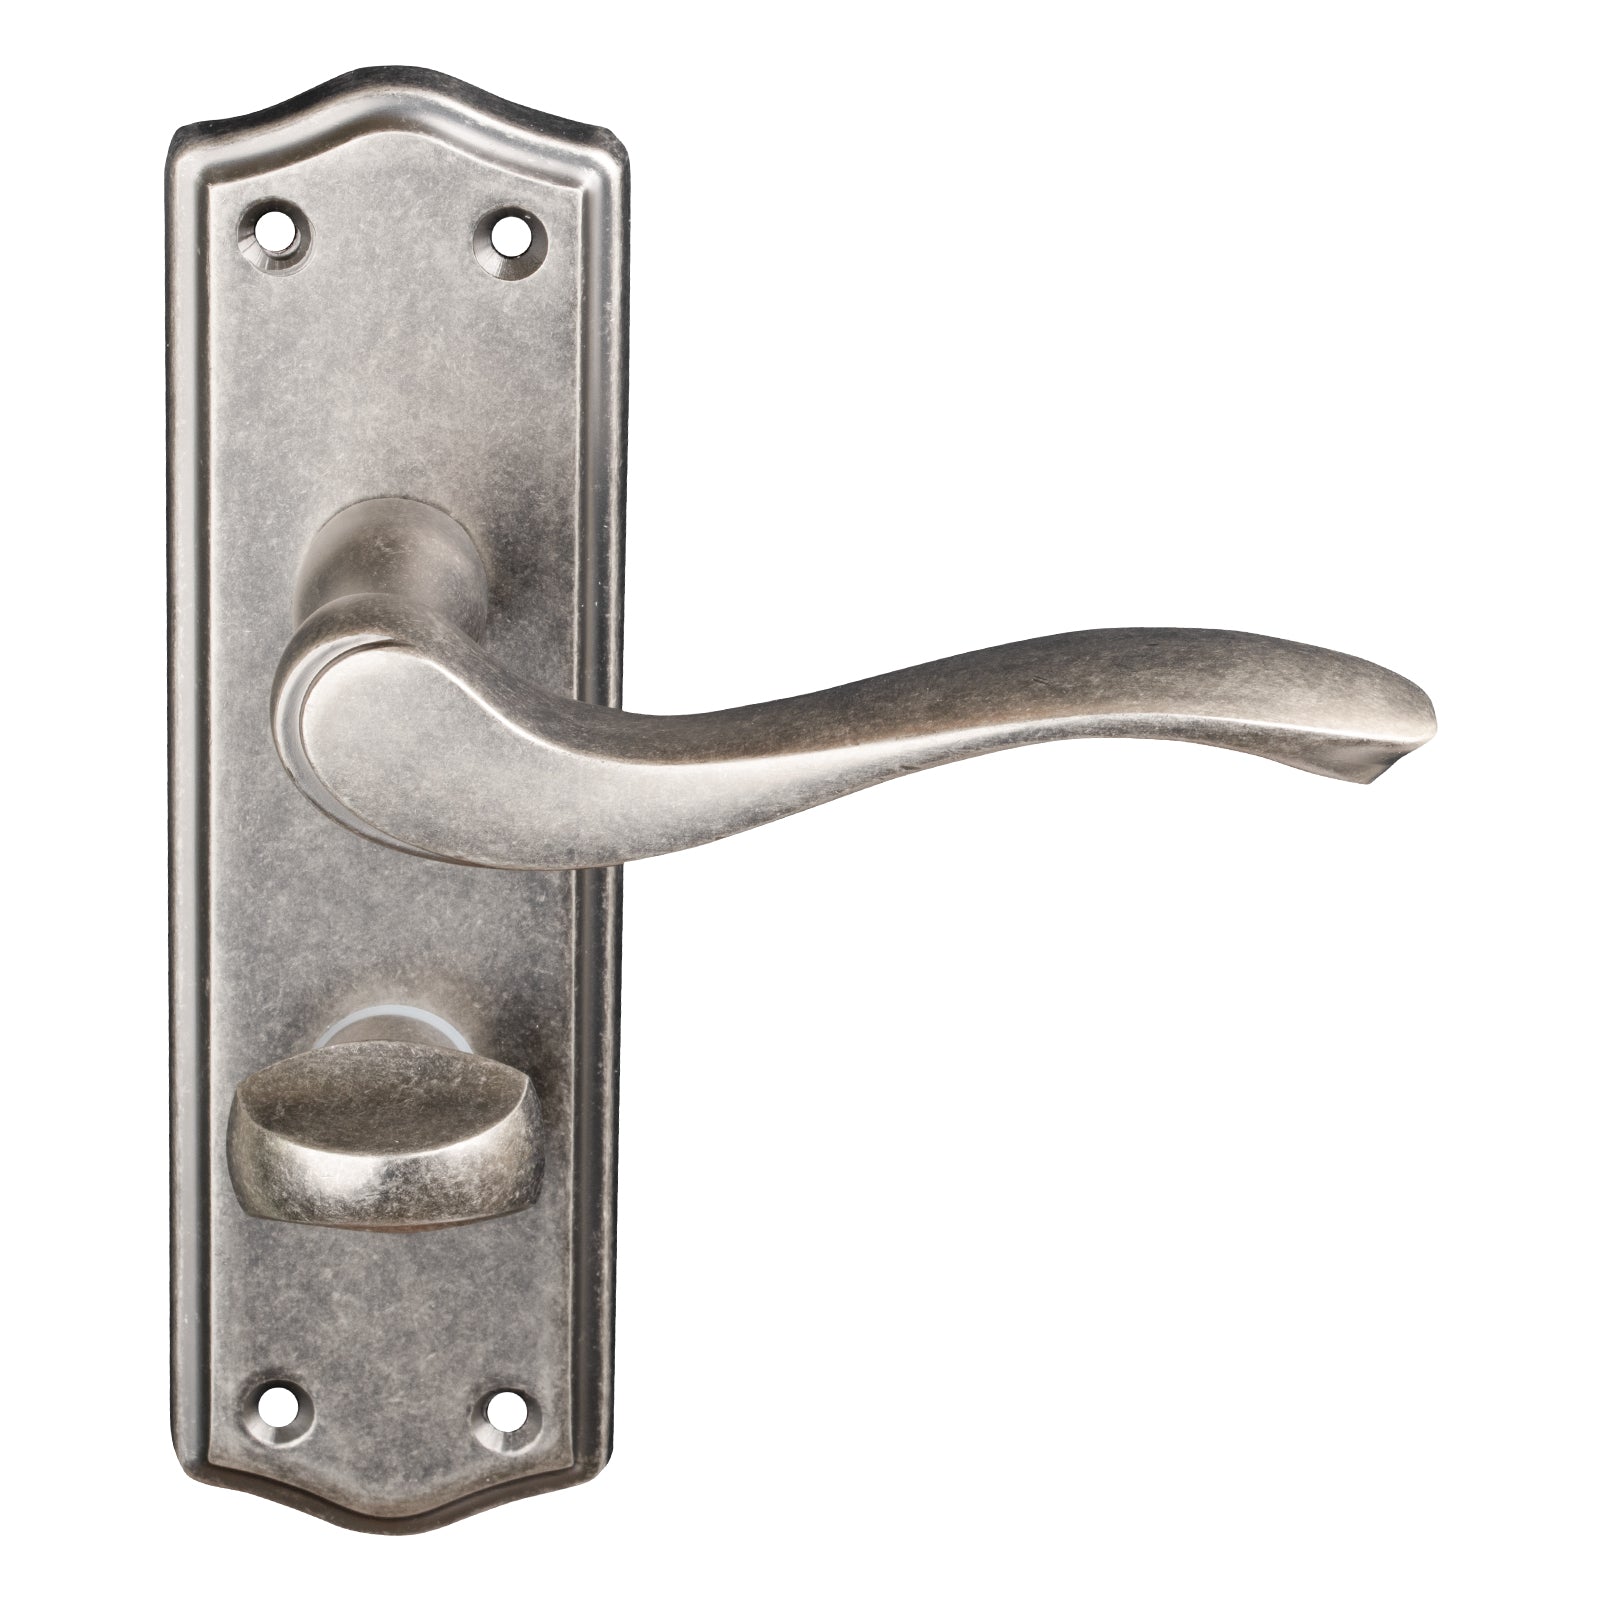 classic lever handle for bathroom doors